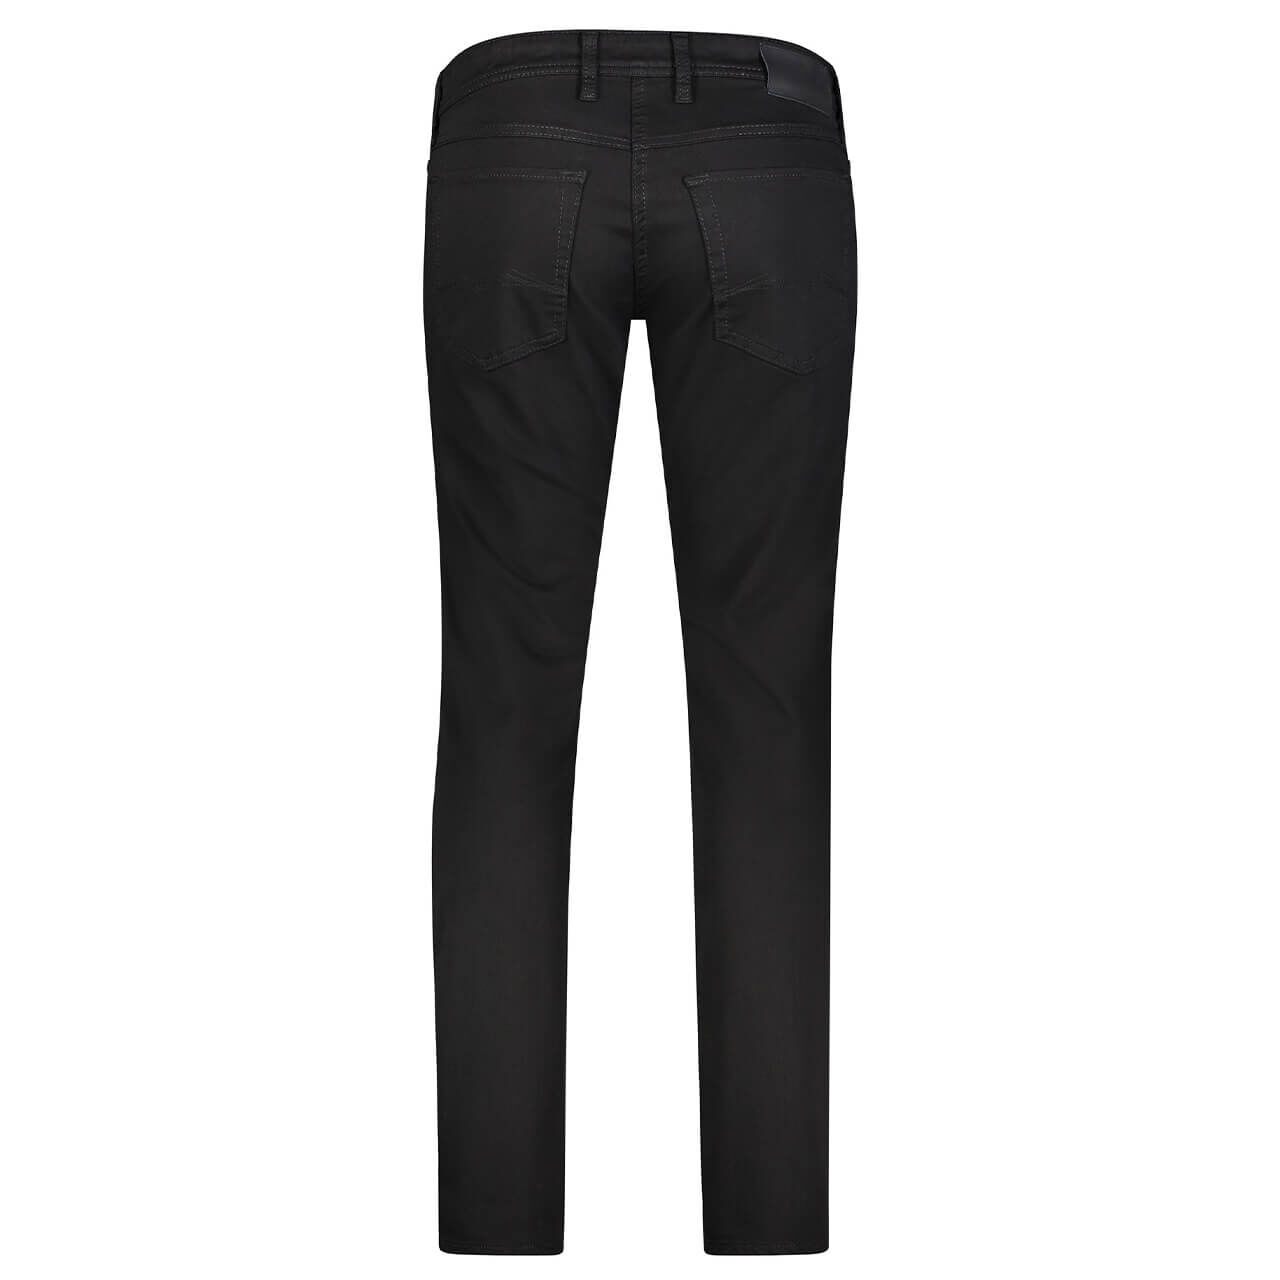 MAC Flexx Jeans stay black